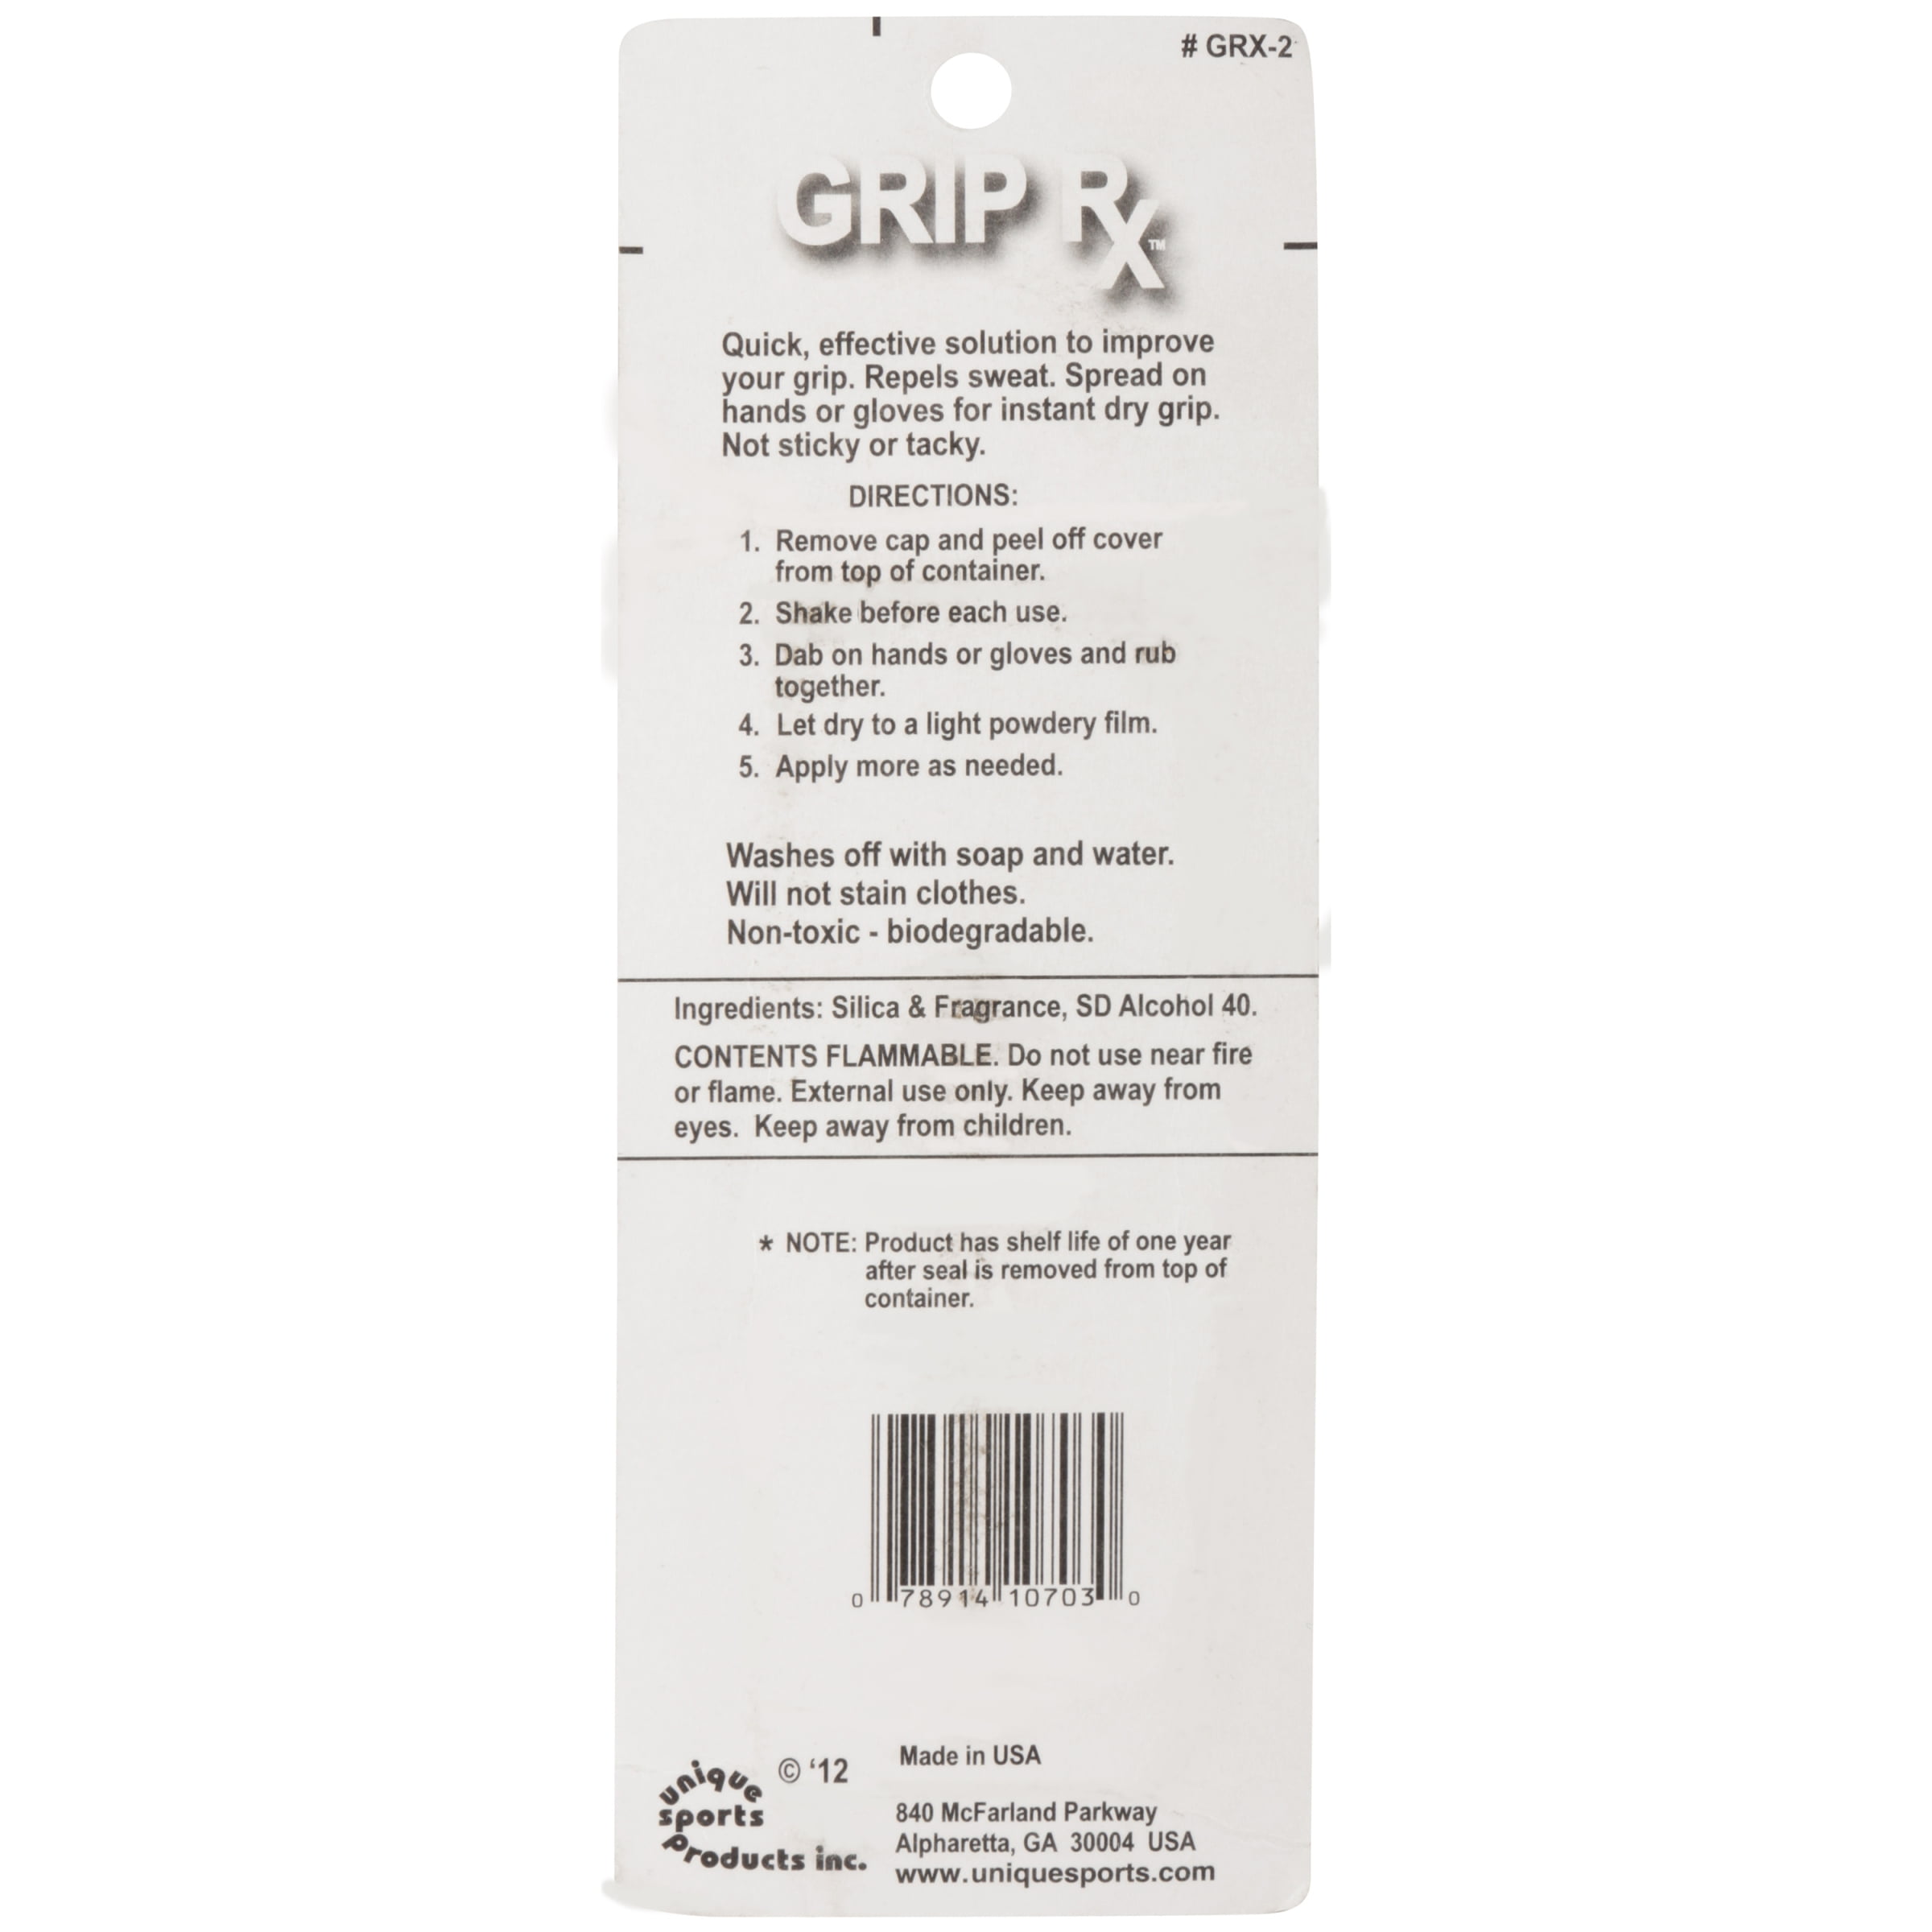 Tourna Grip Rx – Grip Enhancer